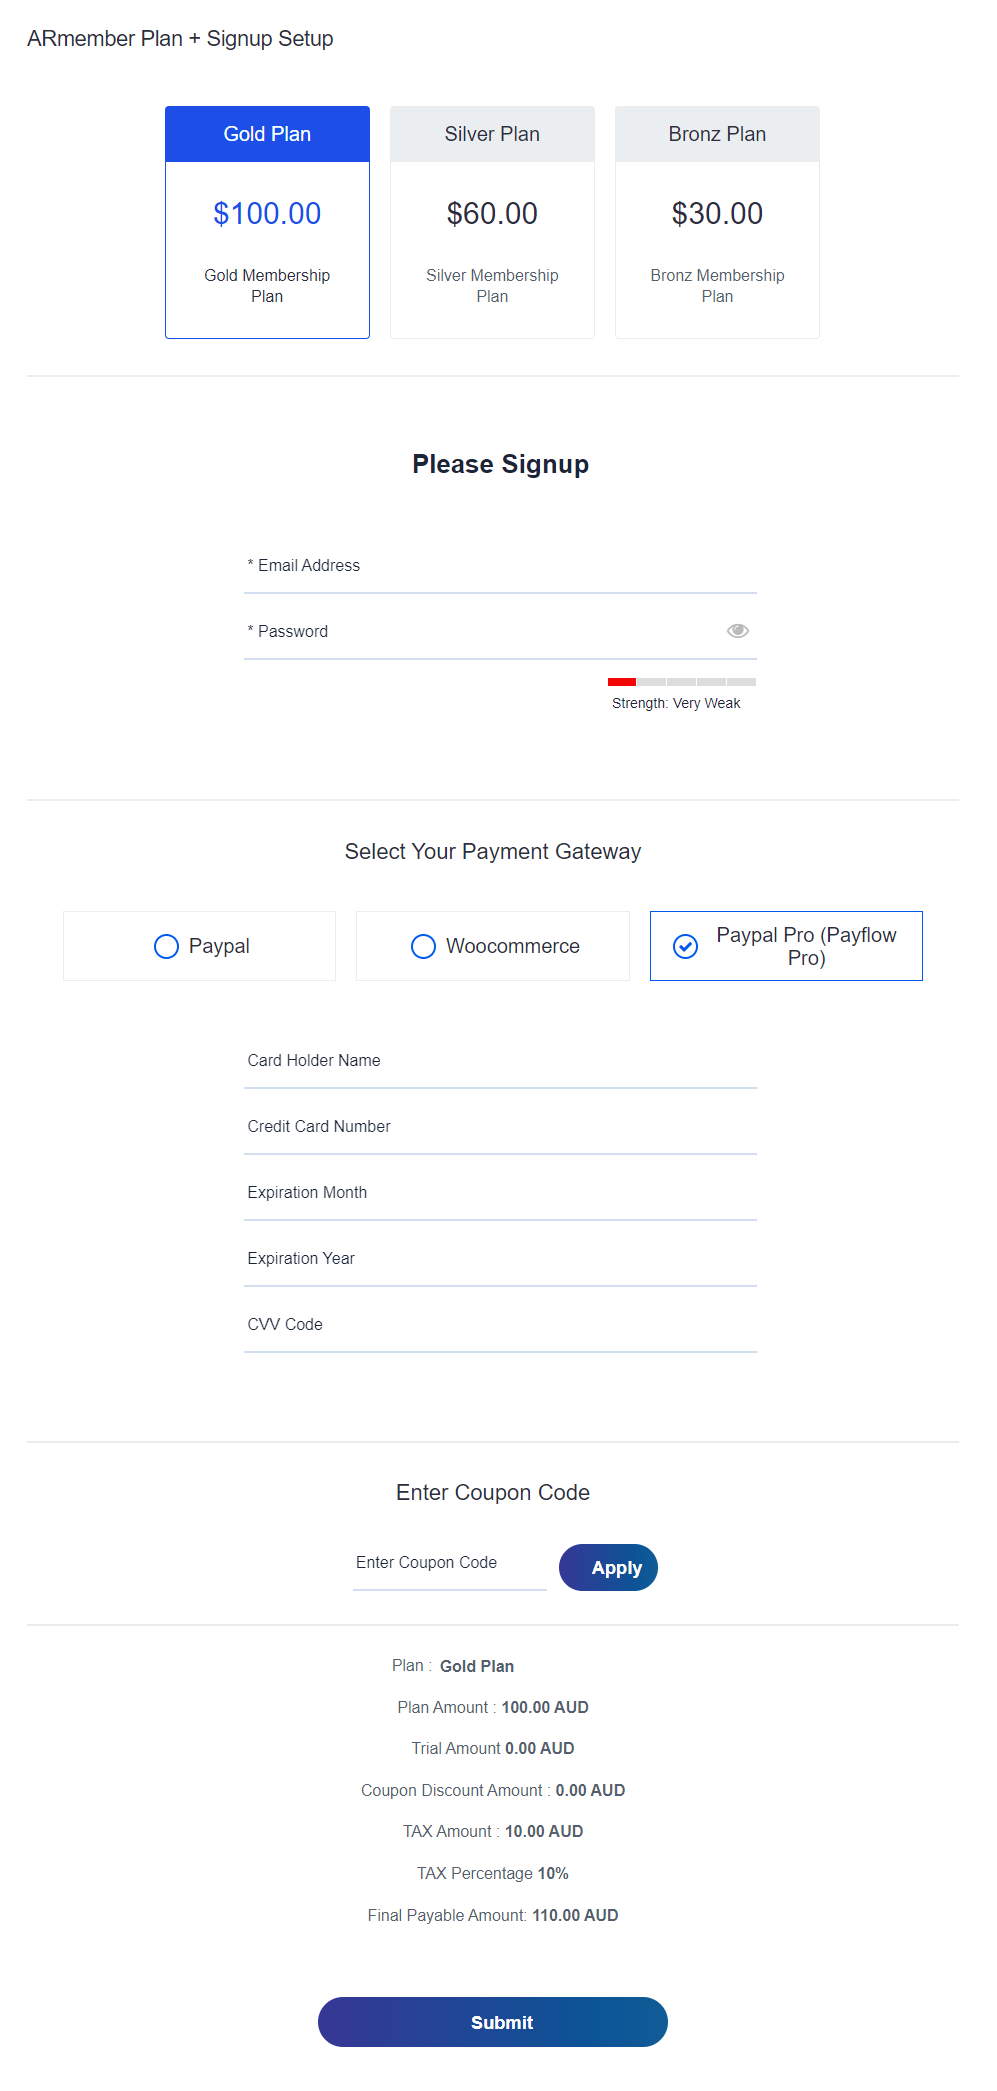 ARMember - PayPal Pro (PayFlow) addon Setup Form